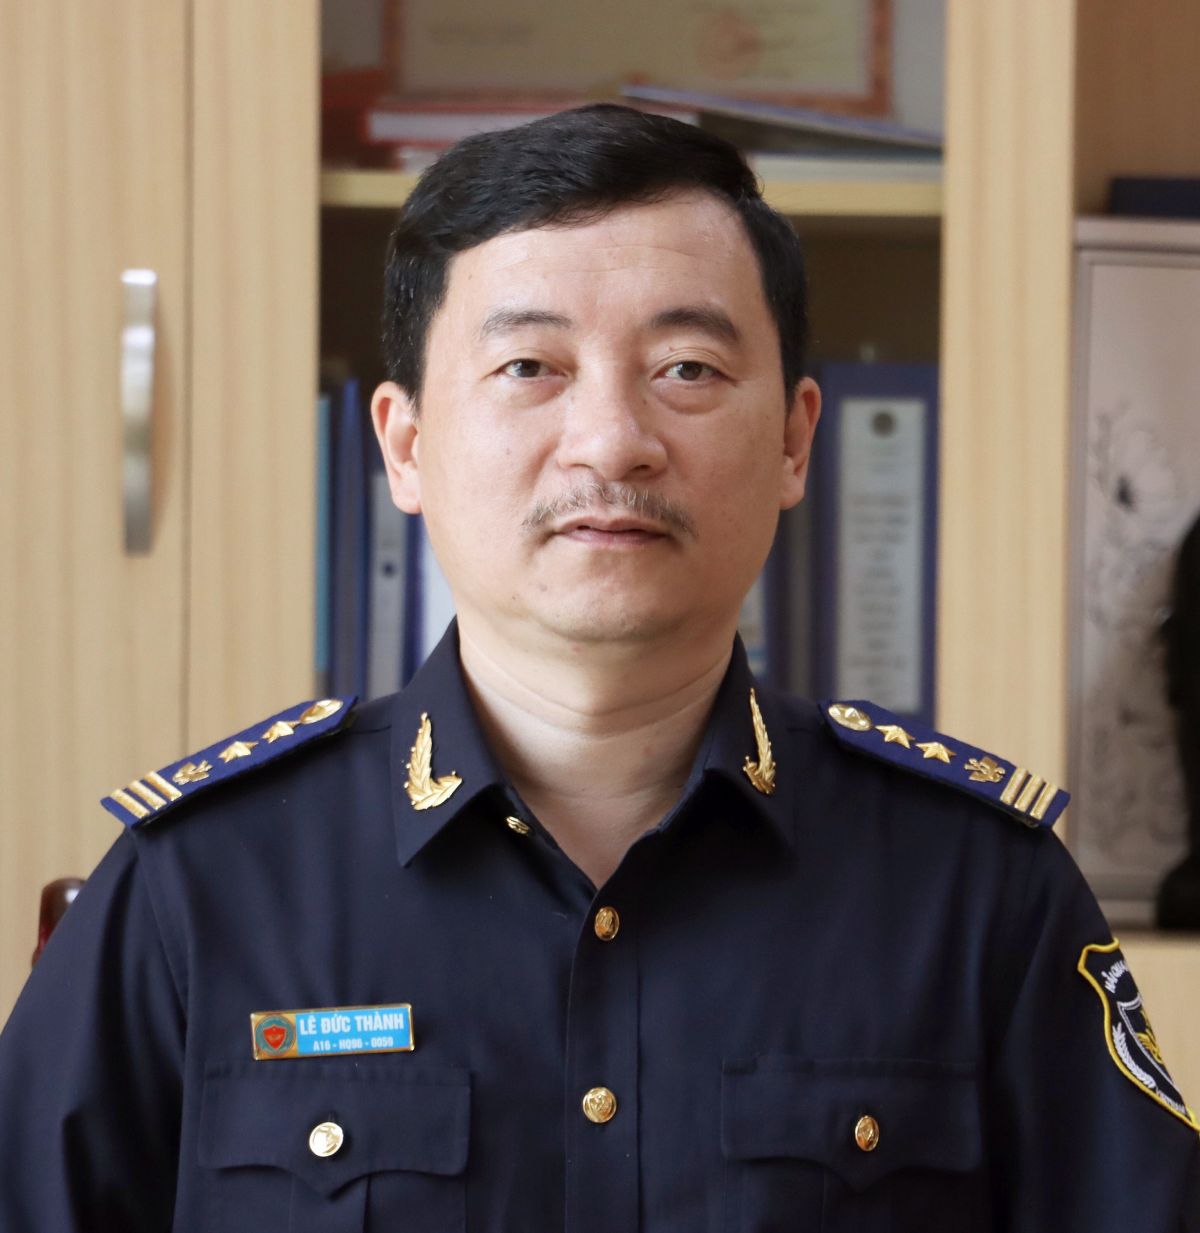 Ông Lê Đức Thành, Cục trưởng Cục CNTT và Thống kê Hải quan - Tổng cục Hải quan.